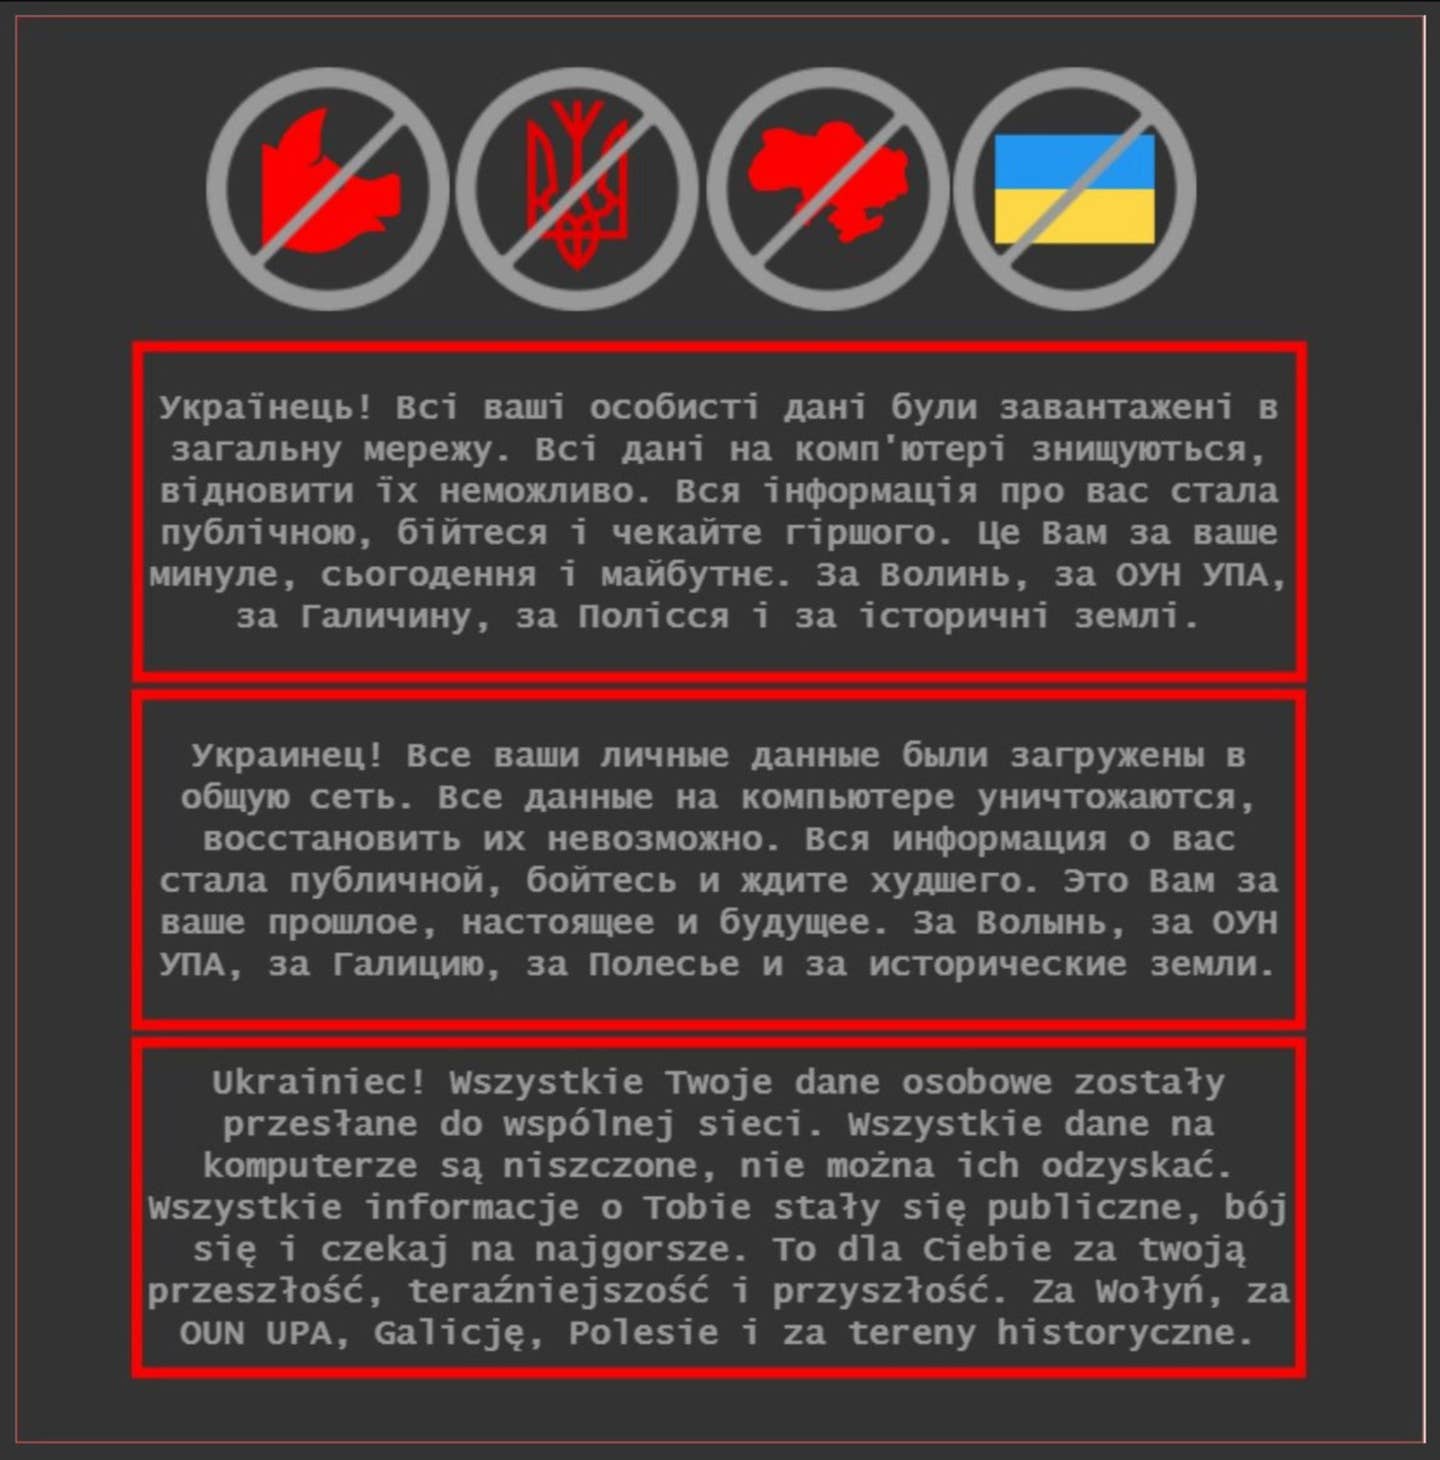 message-editor%2F1642619992396-ukrainiangovernmentcyberattack.jpg